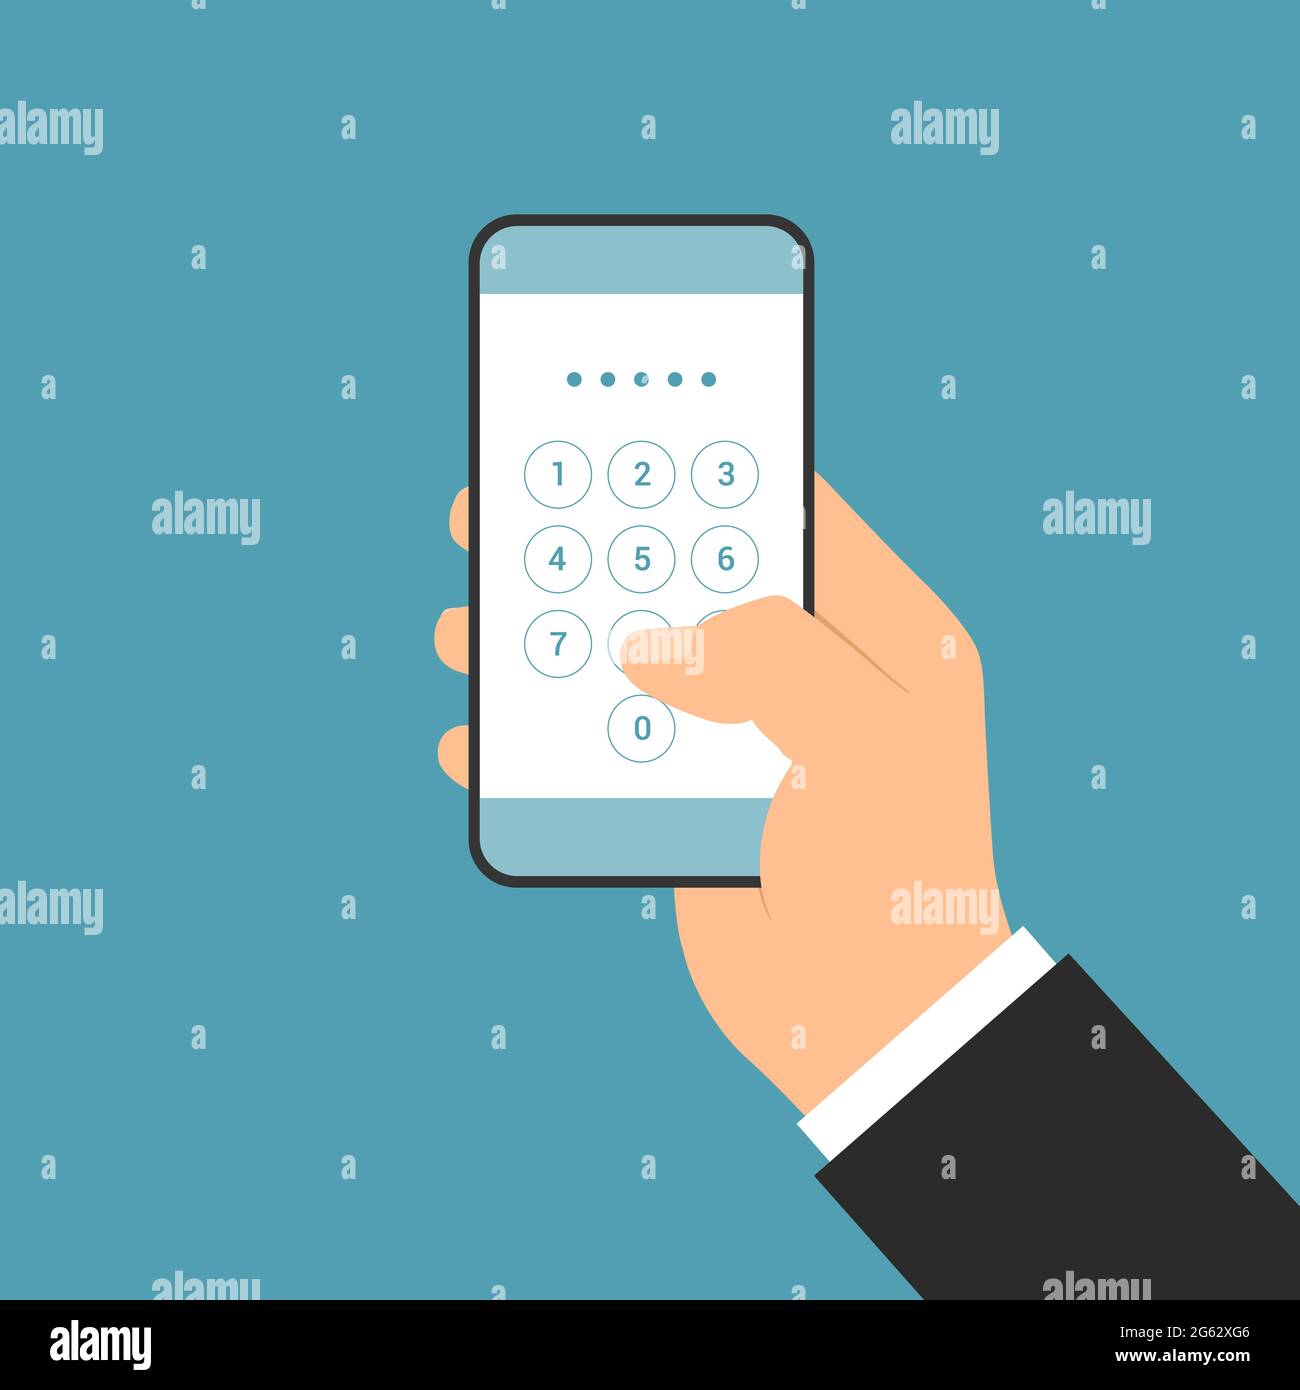 Disegno piatto dell'illustrazione della mano del gestore che tiene lo smartphone con la schermata di accesso e l'inserimento del codice PIN - vettore Illustrazione Vettoriale